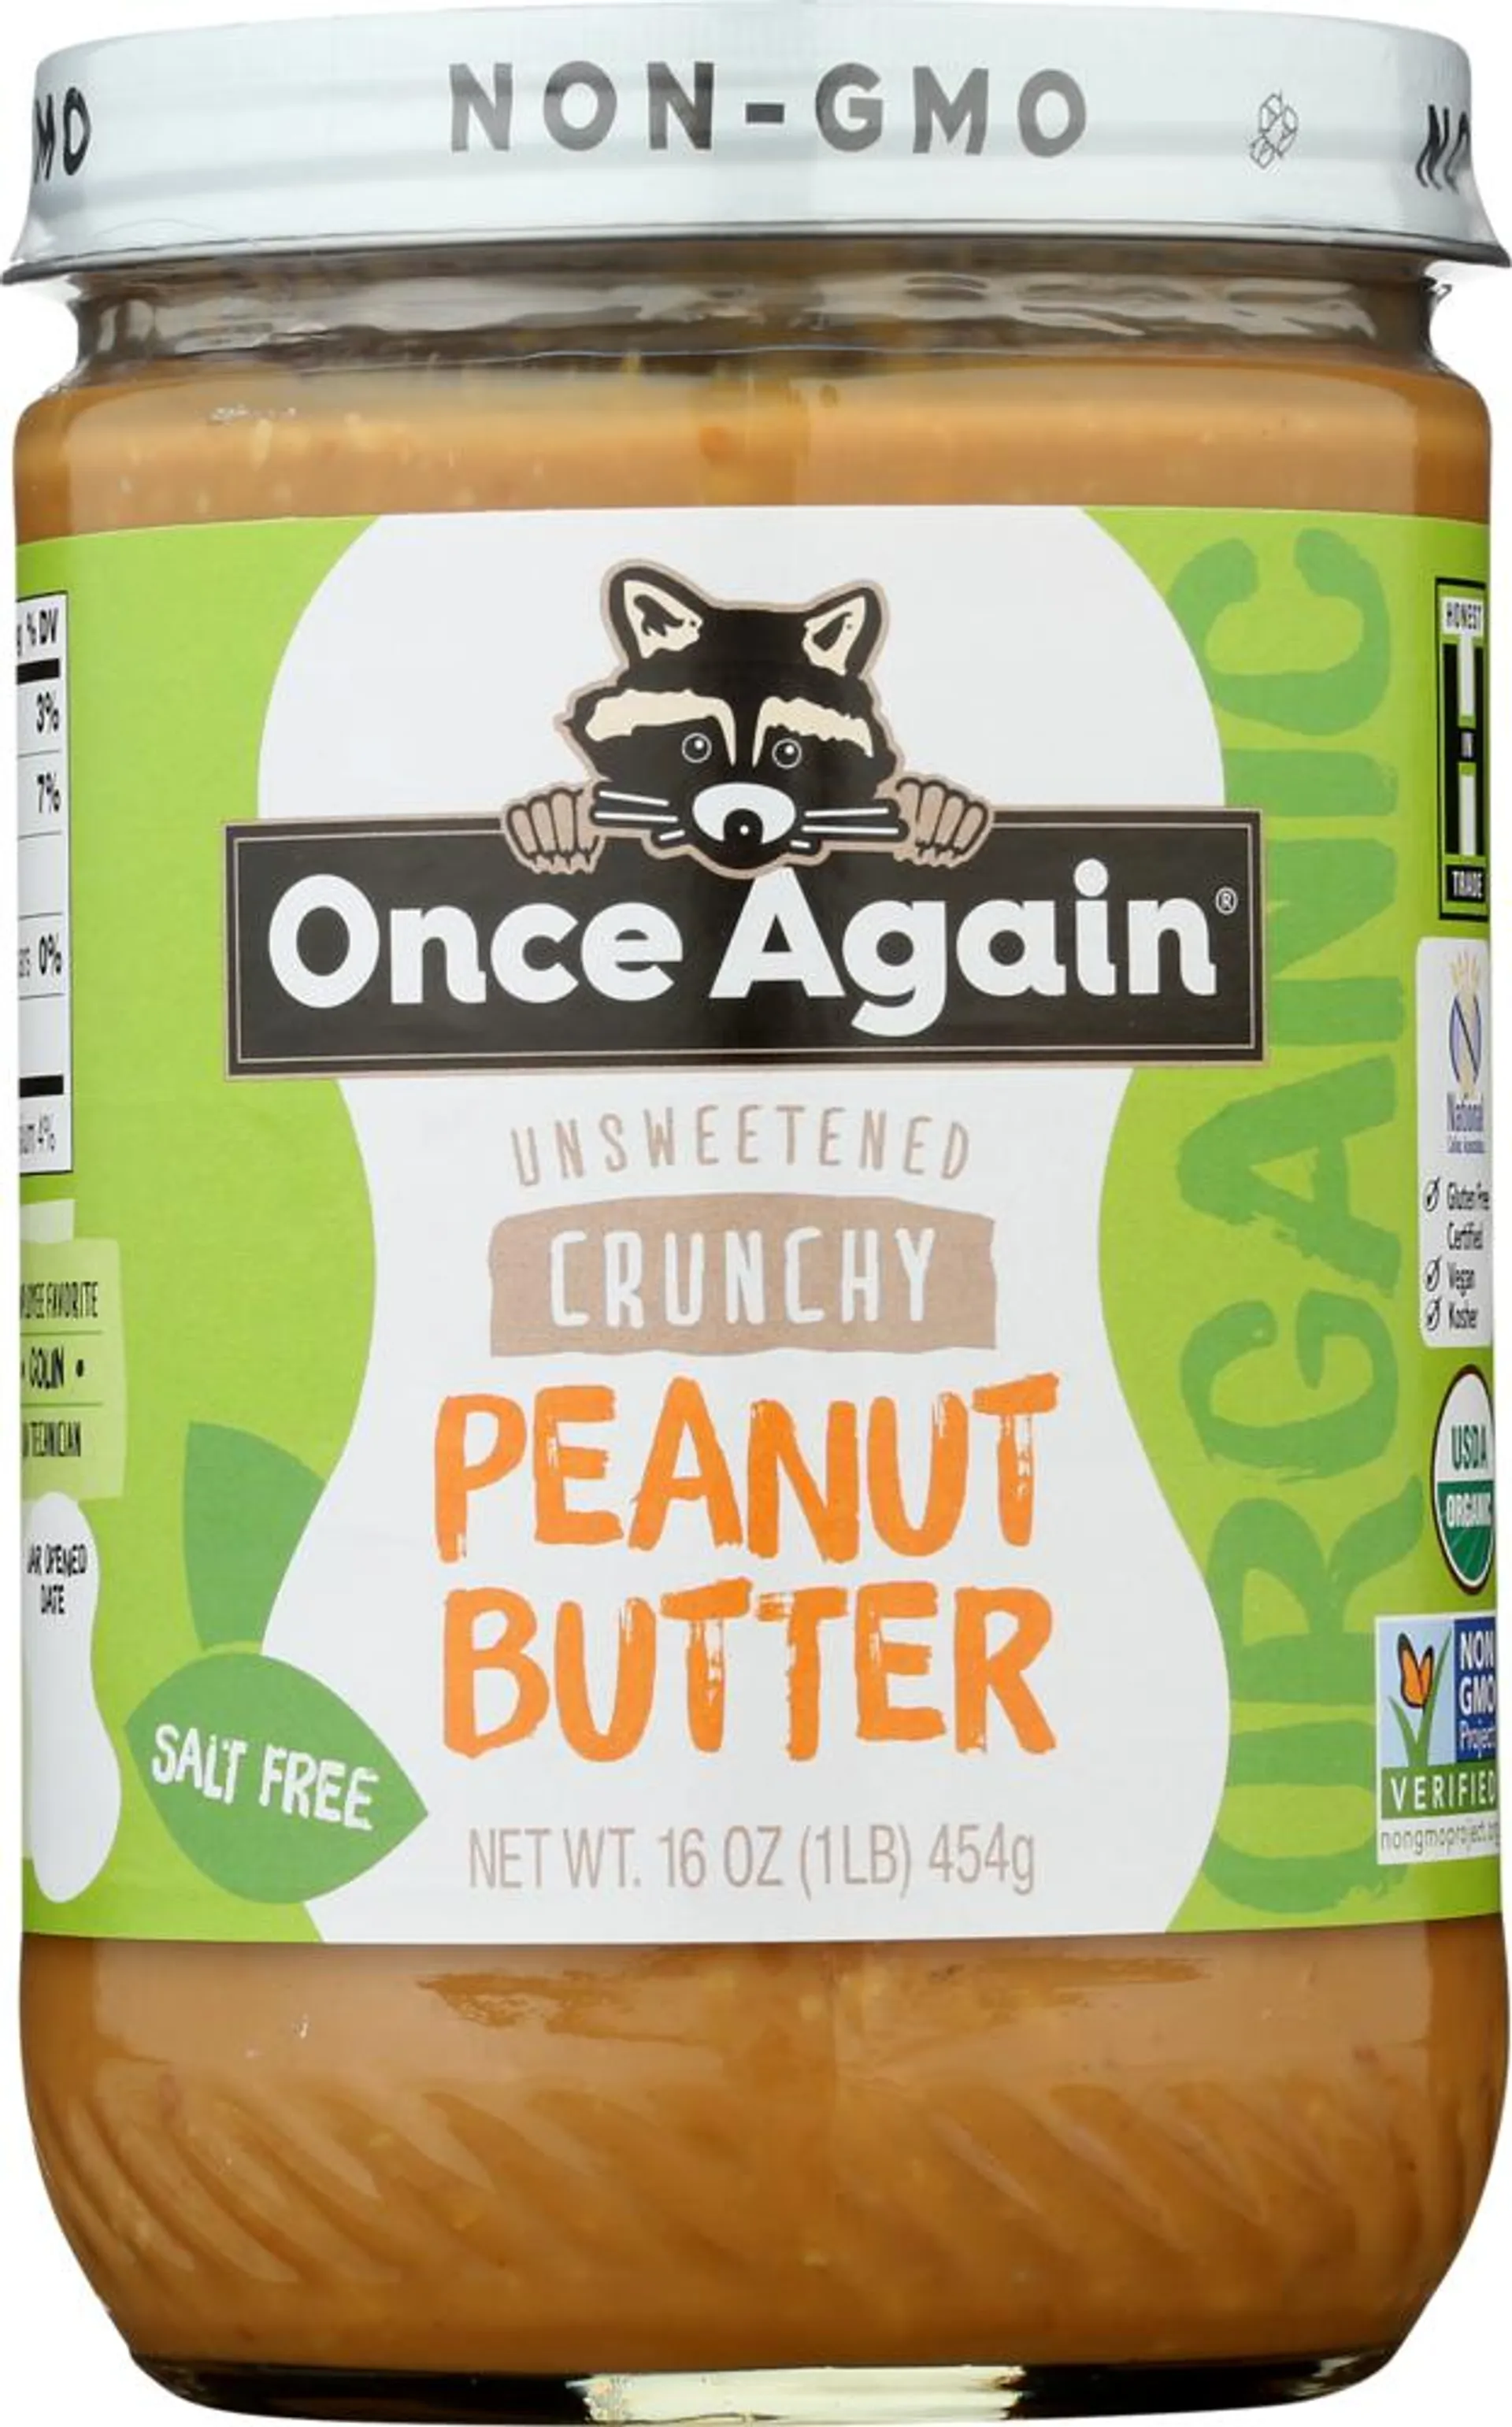 Organic Peanut Butter Crunchy